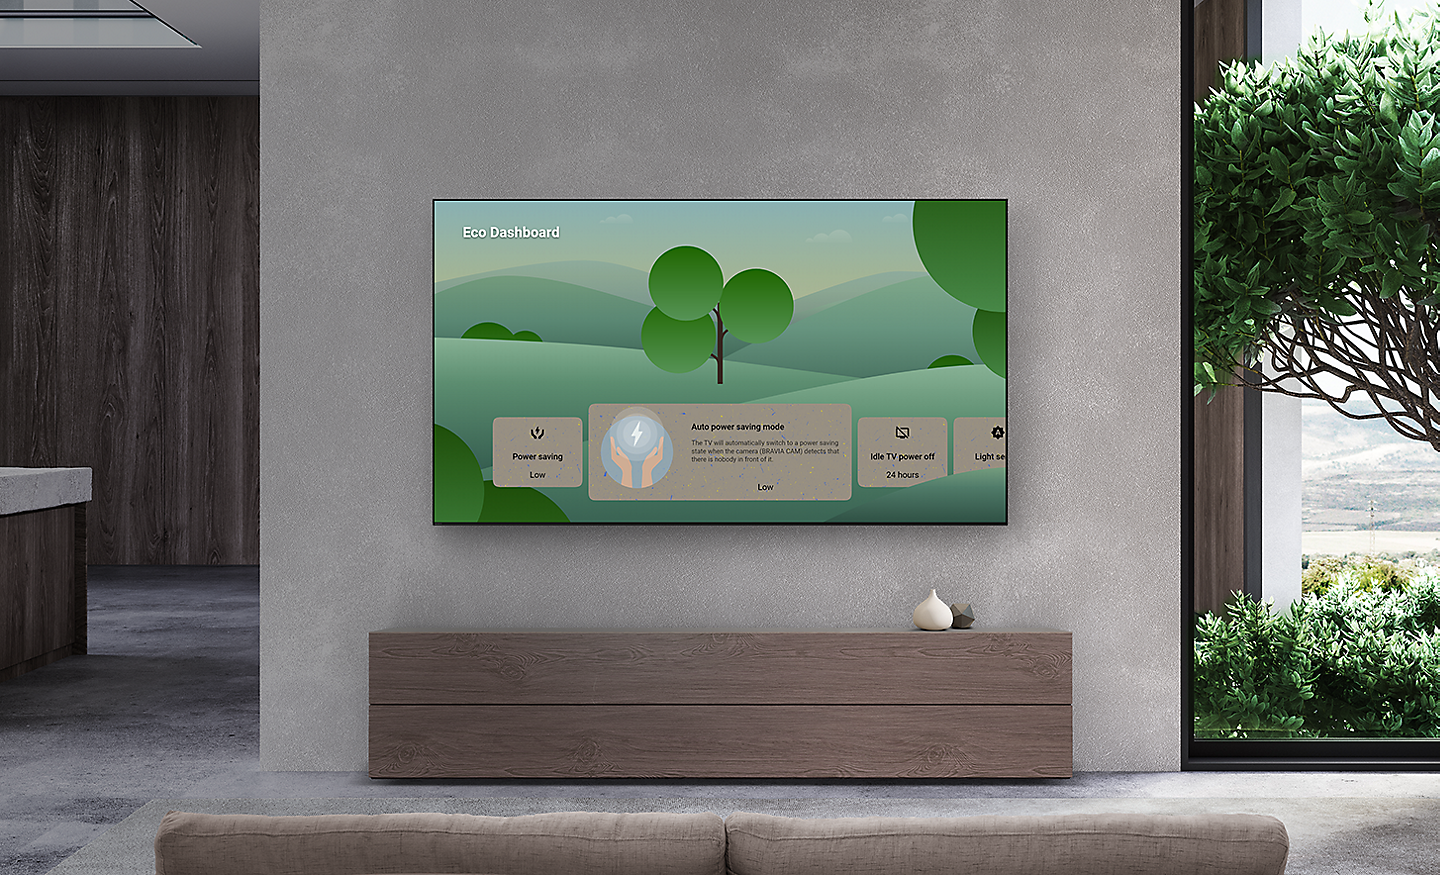 客廳的壁掛式 BRAVIA TV 螢幕上顯示環保儀表板